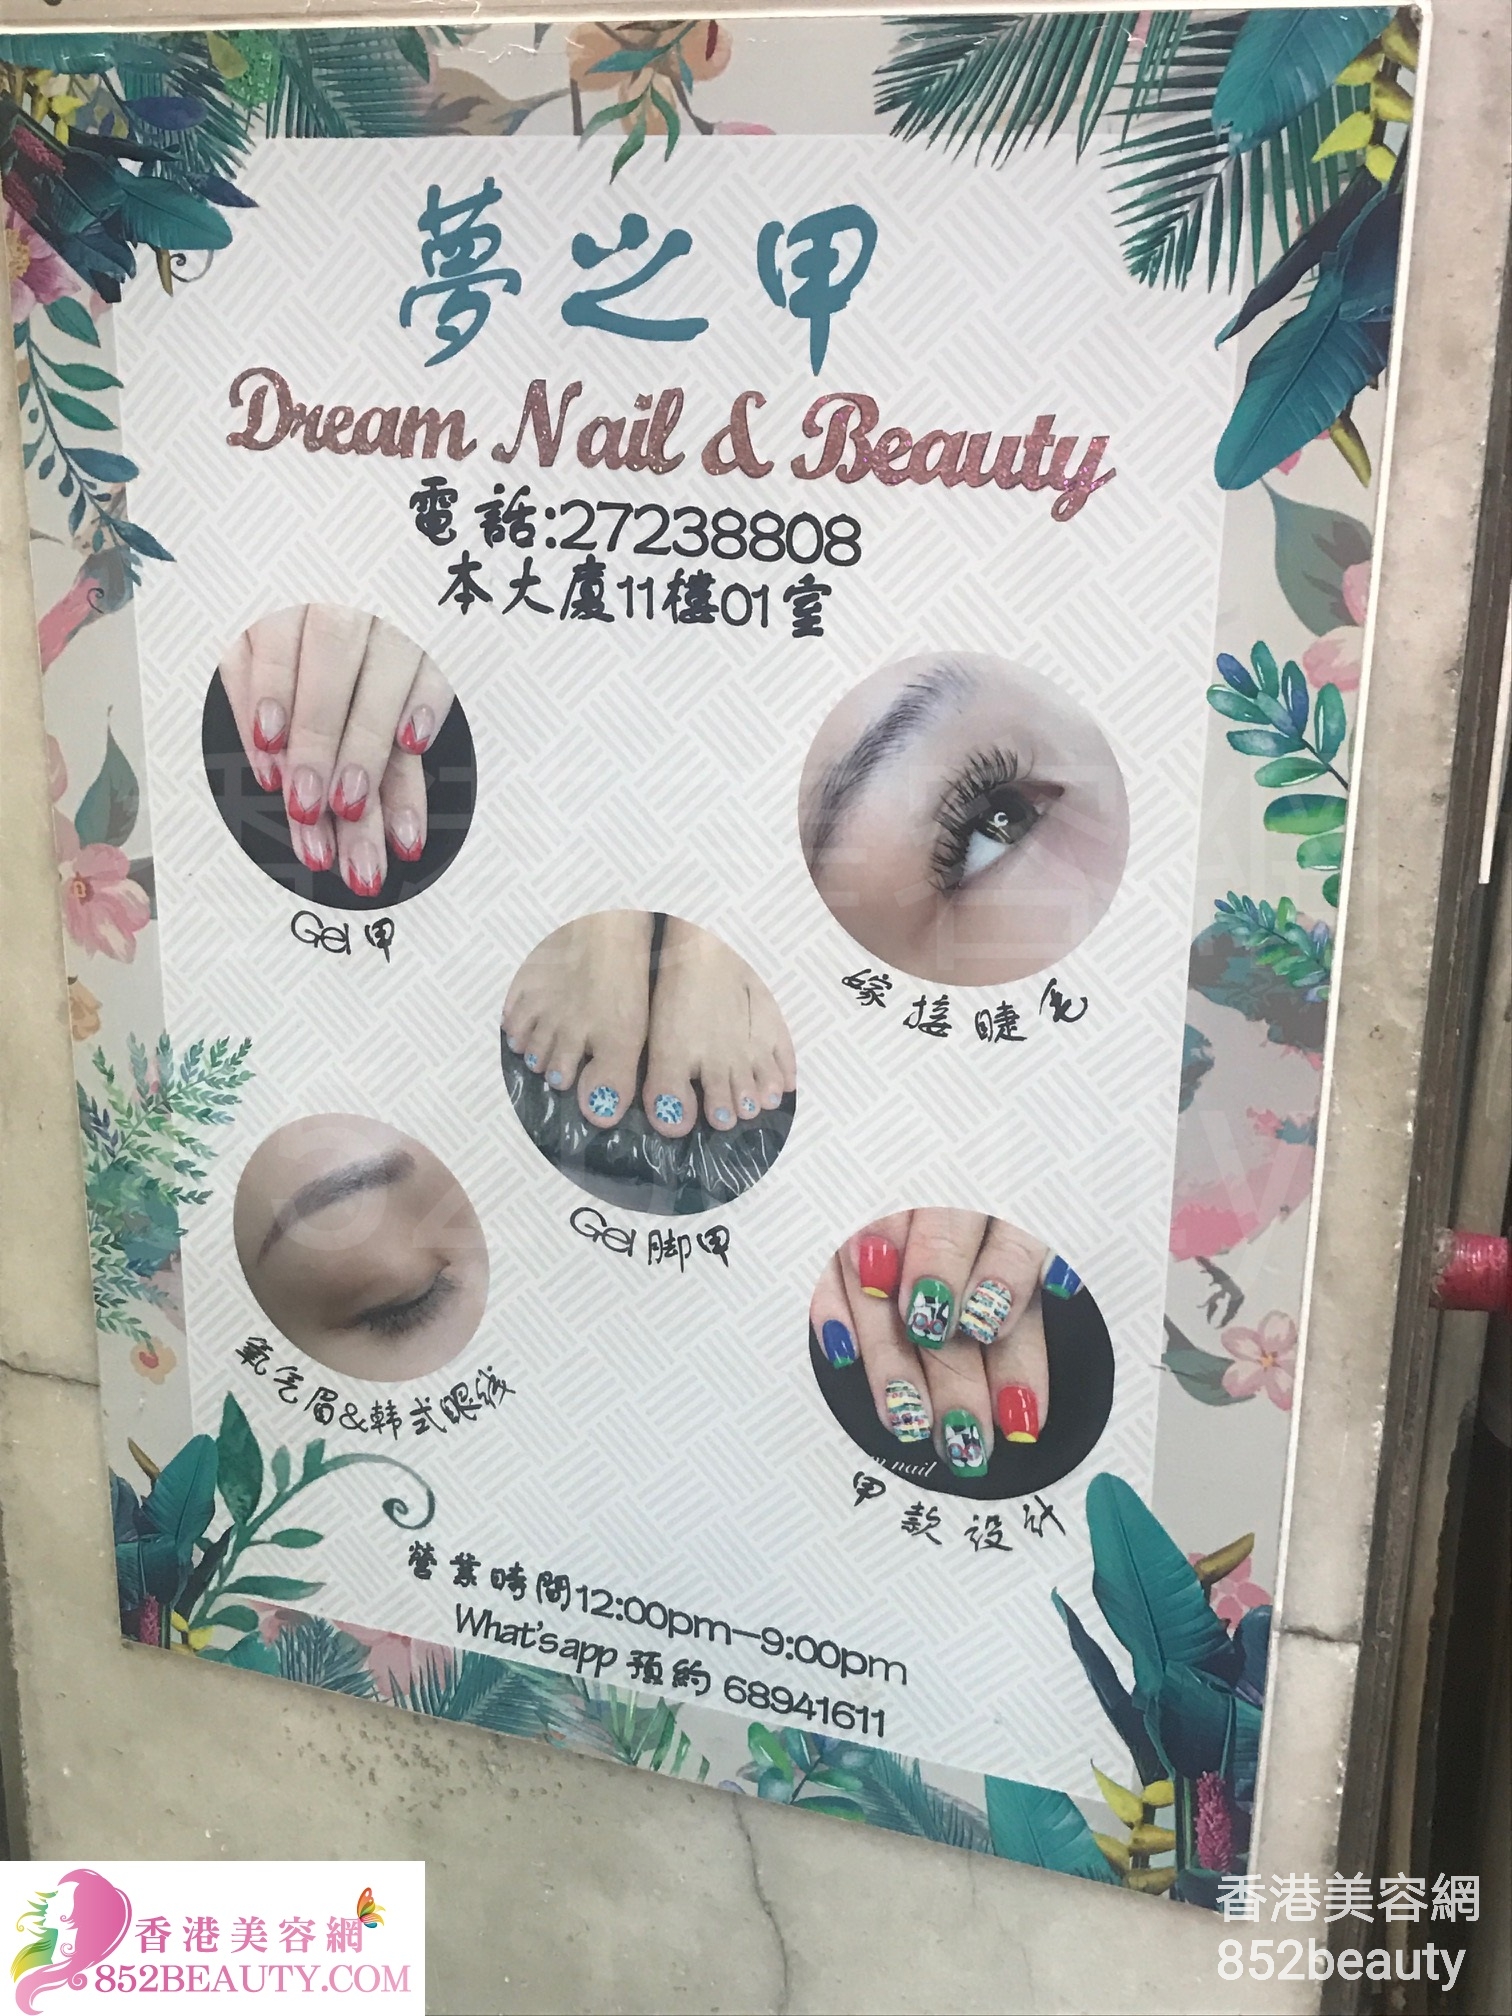 美容院 Beauty Salon: 夢之甲 Dream Nail & Beauty (已結業)